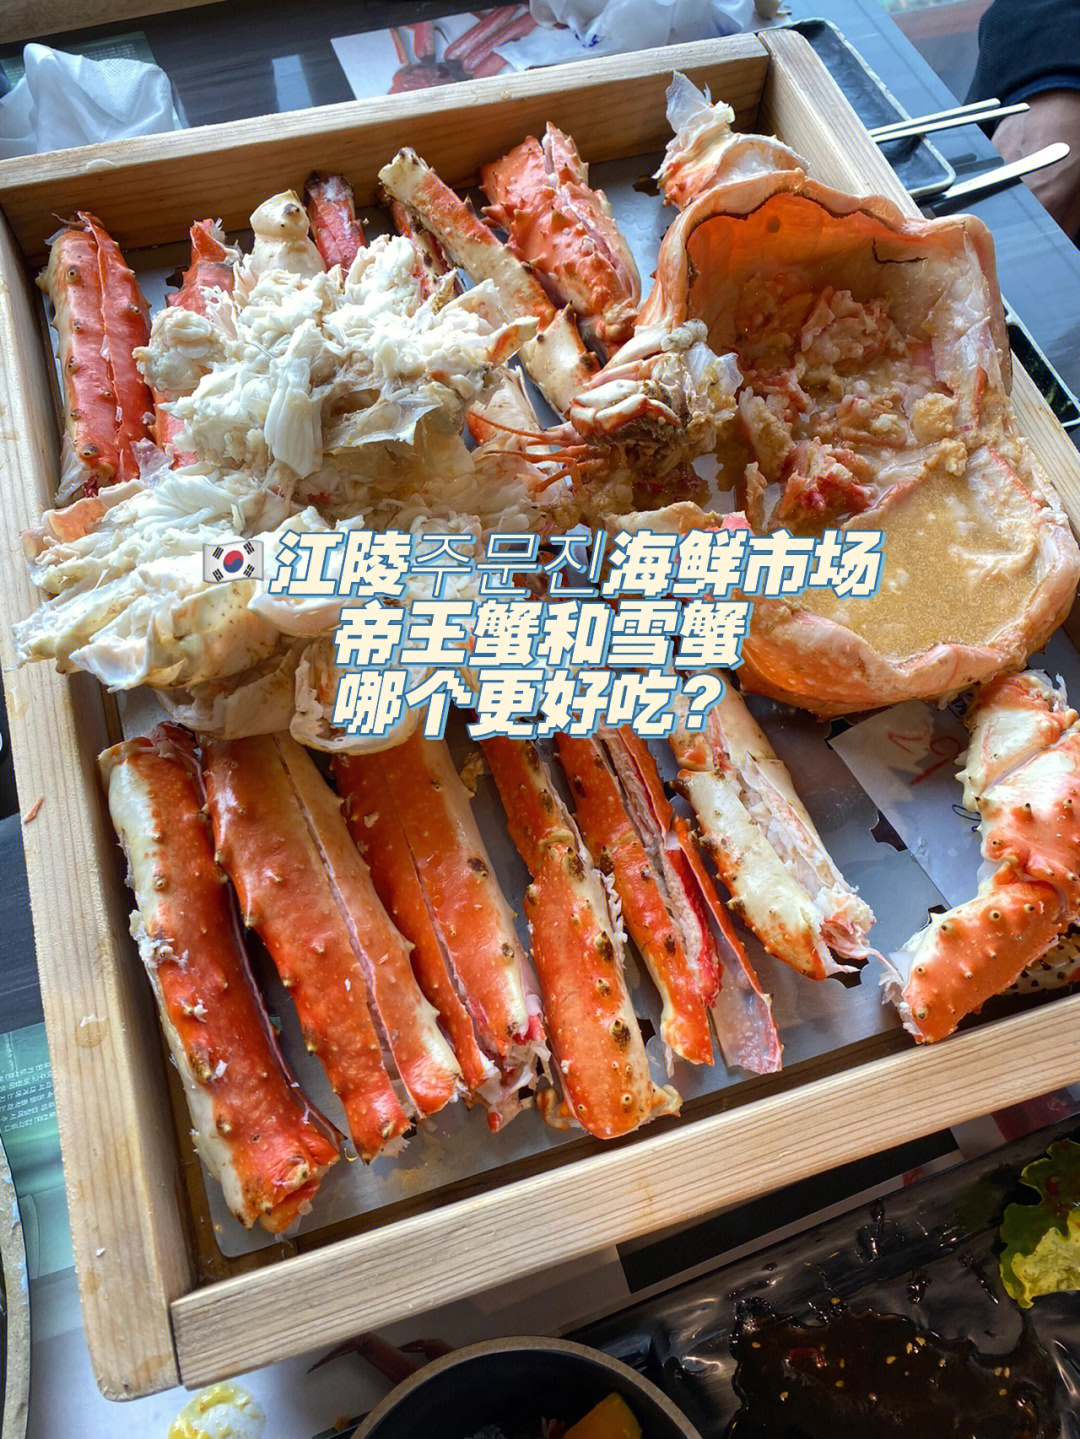 炸虾等,帝王蟹肉很多,蟹腿部分比较咸～蟹身是甜的,最开始吃得很欢乐